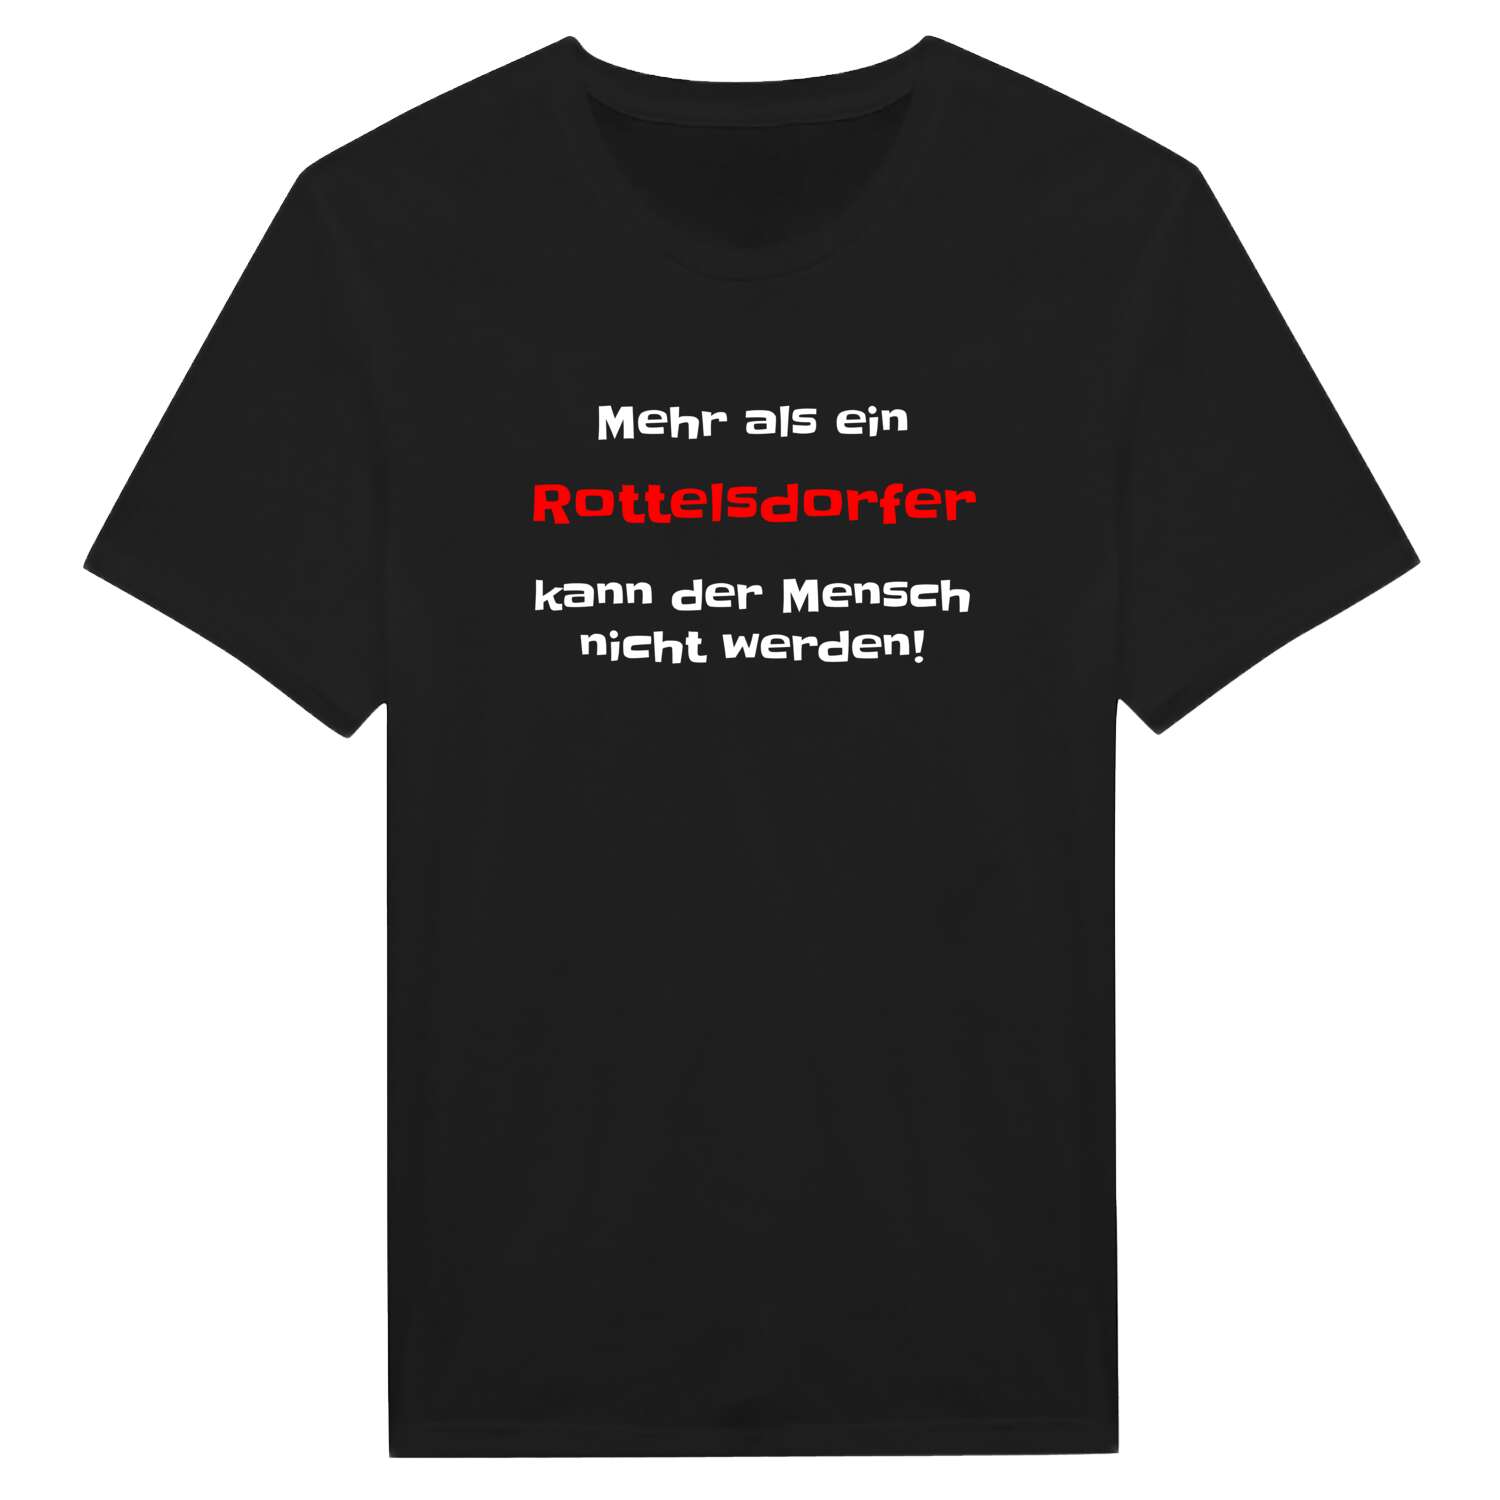 Rottelsdorf T-Shirt »Mehr als ein«